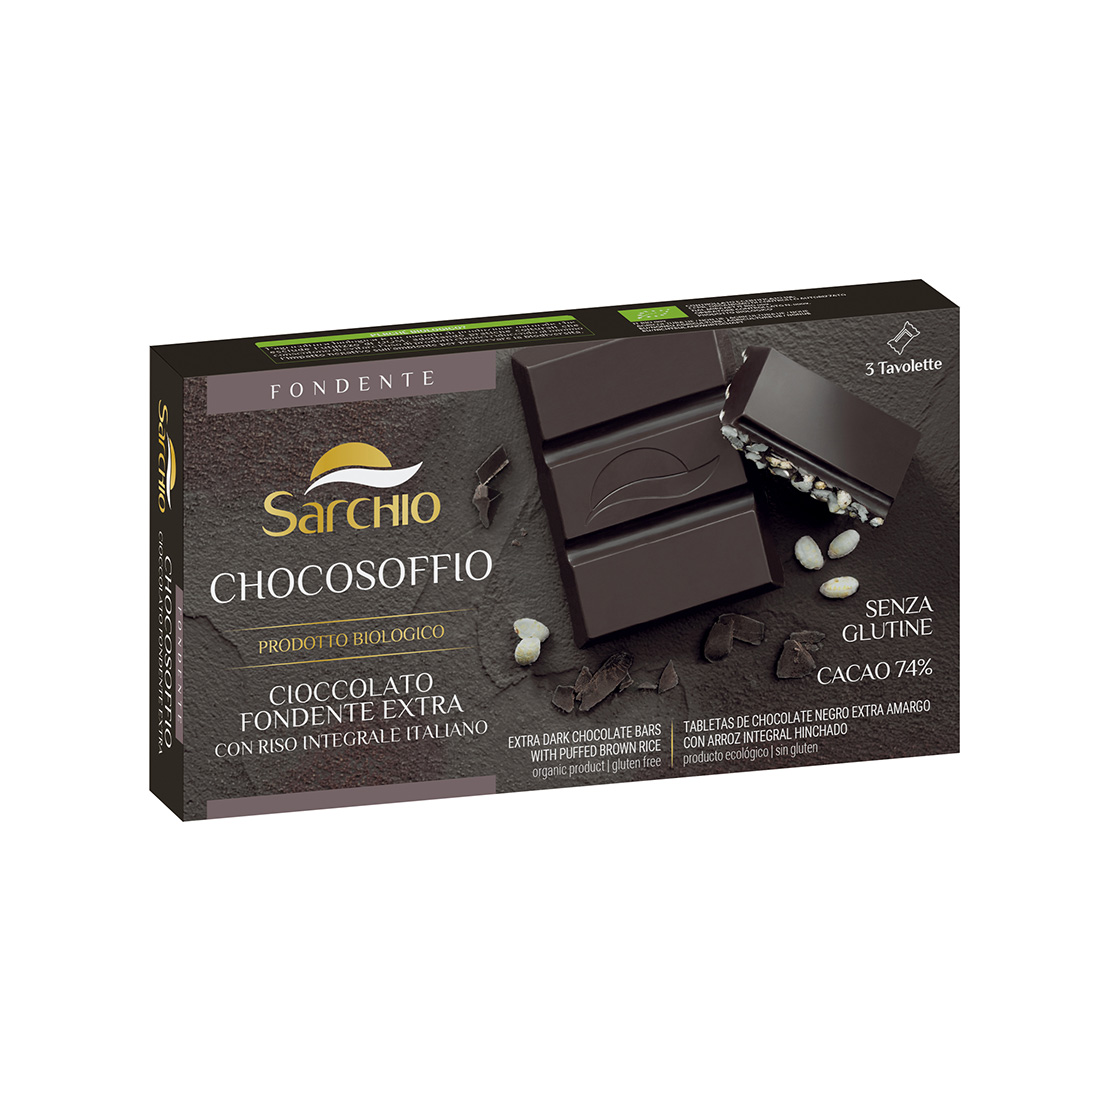 Chocosoffio dark chocolate